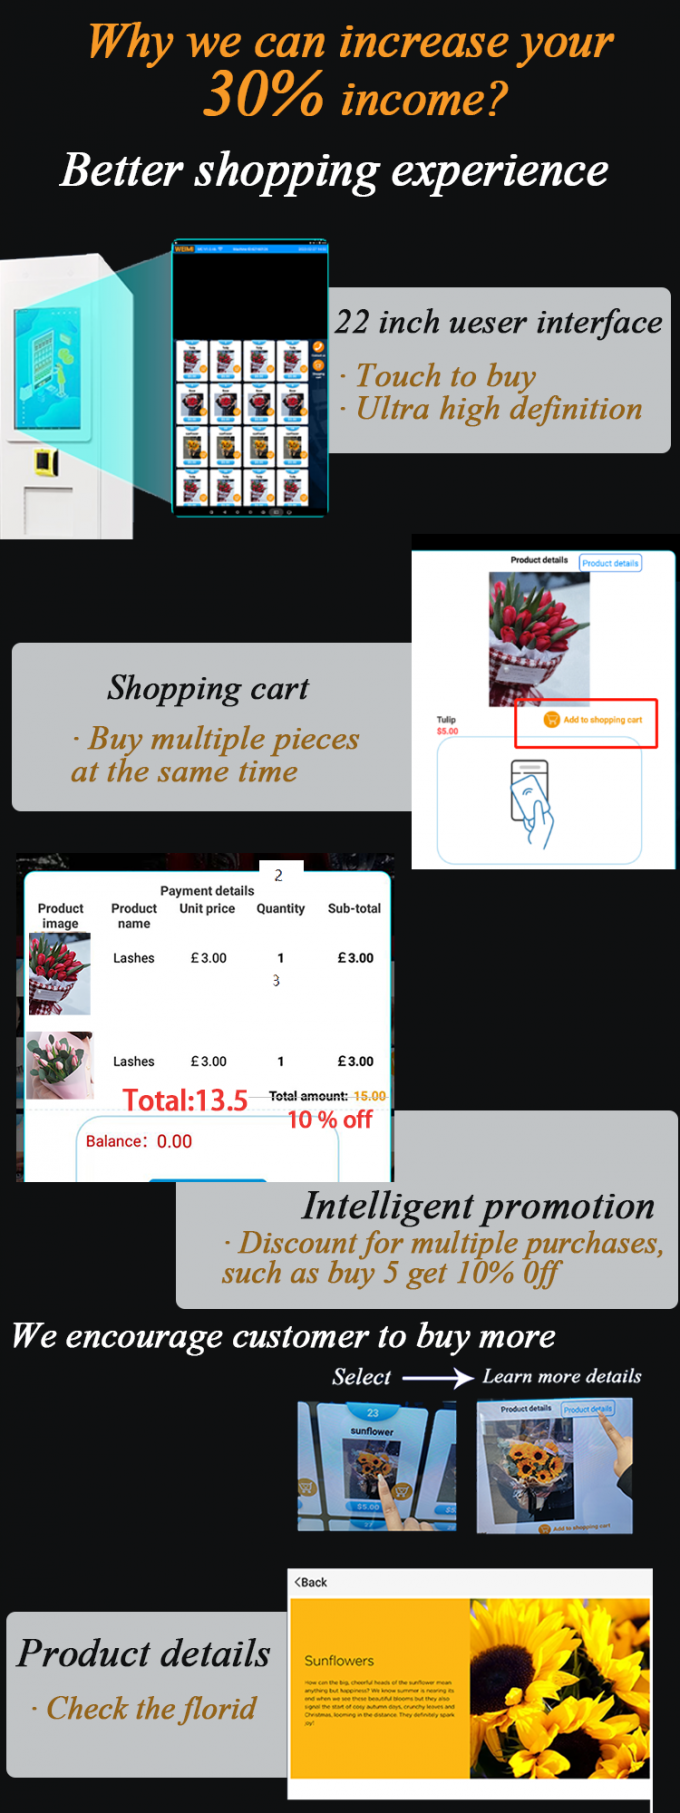 ミクロンのスマートな花の自動販売機をなぜ選びなさいかか。私達はあなたの30%の収入を高めてもいい!私達の機械は理性的顧客によりよい買物をする経験を提供するためにであり、